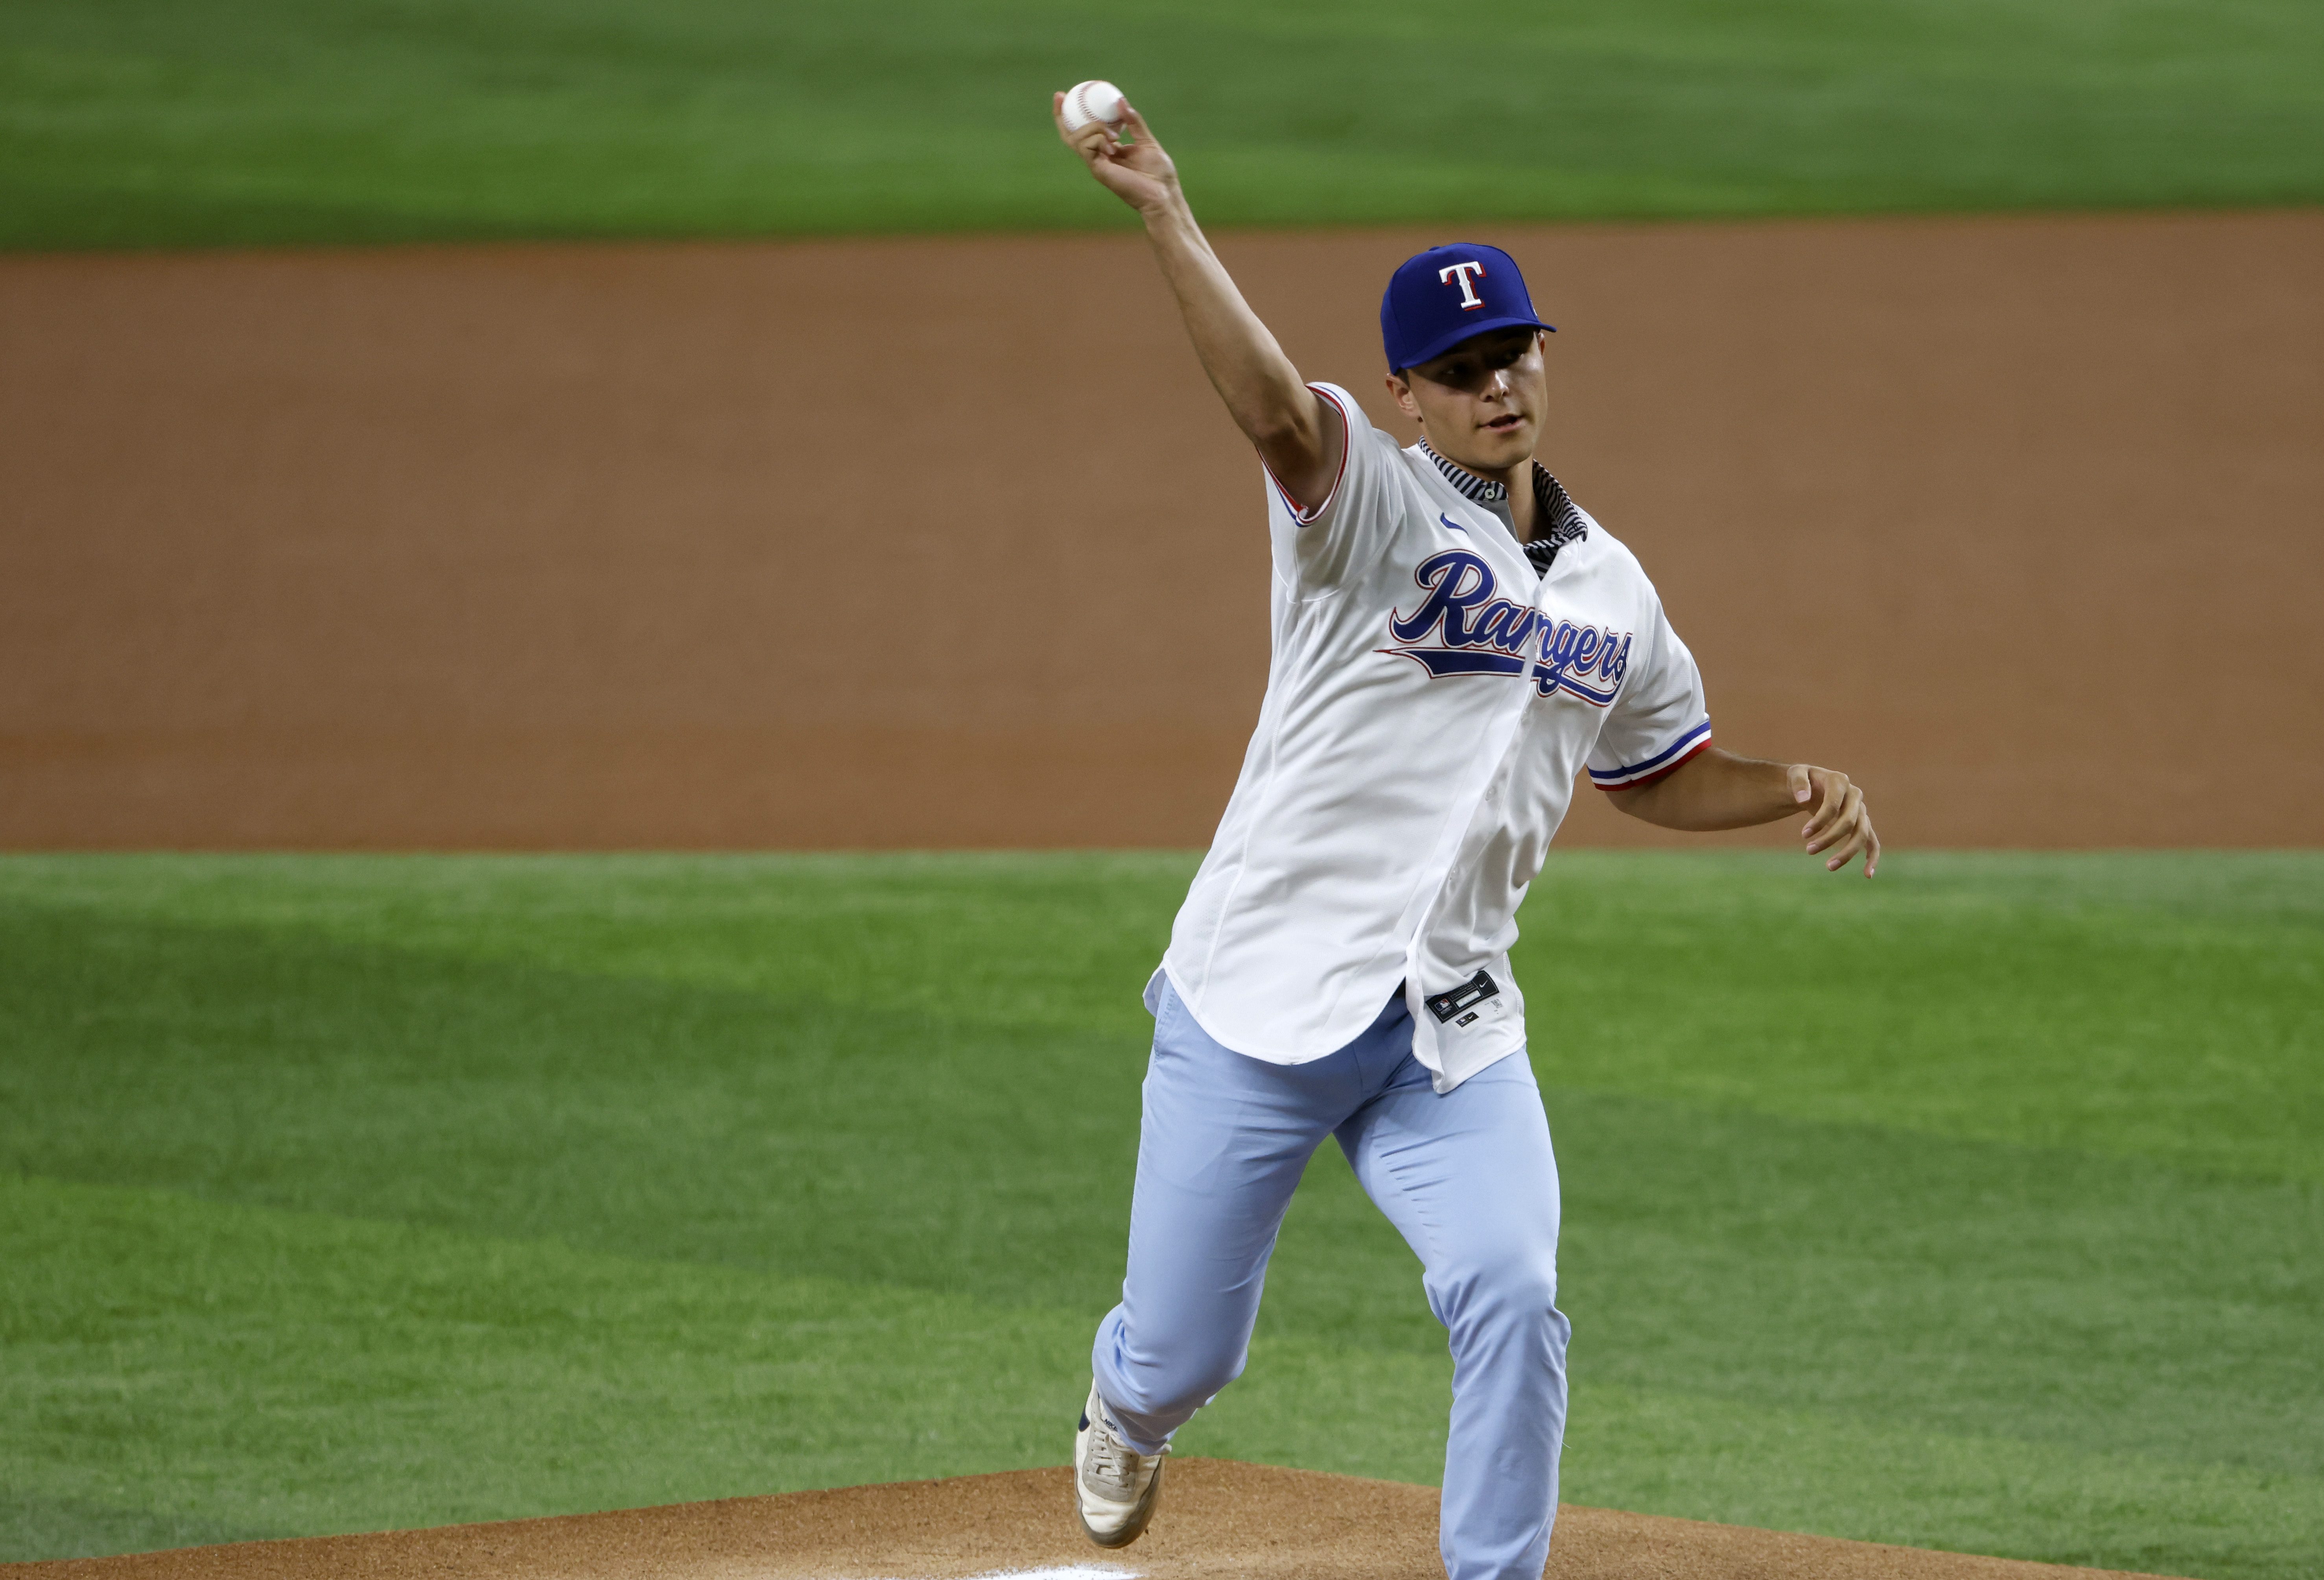 Texas Rangers 'got their guy' in Vanderbilt pitcher Jack Leiter